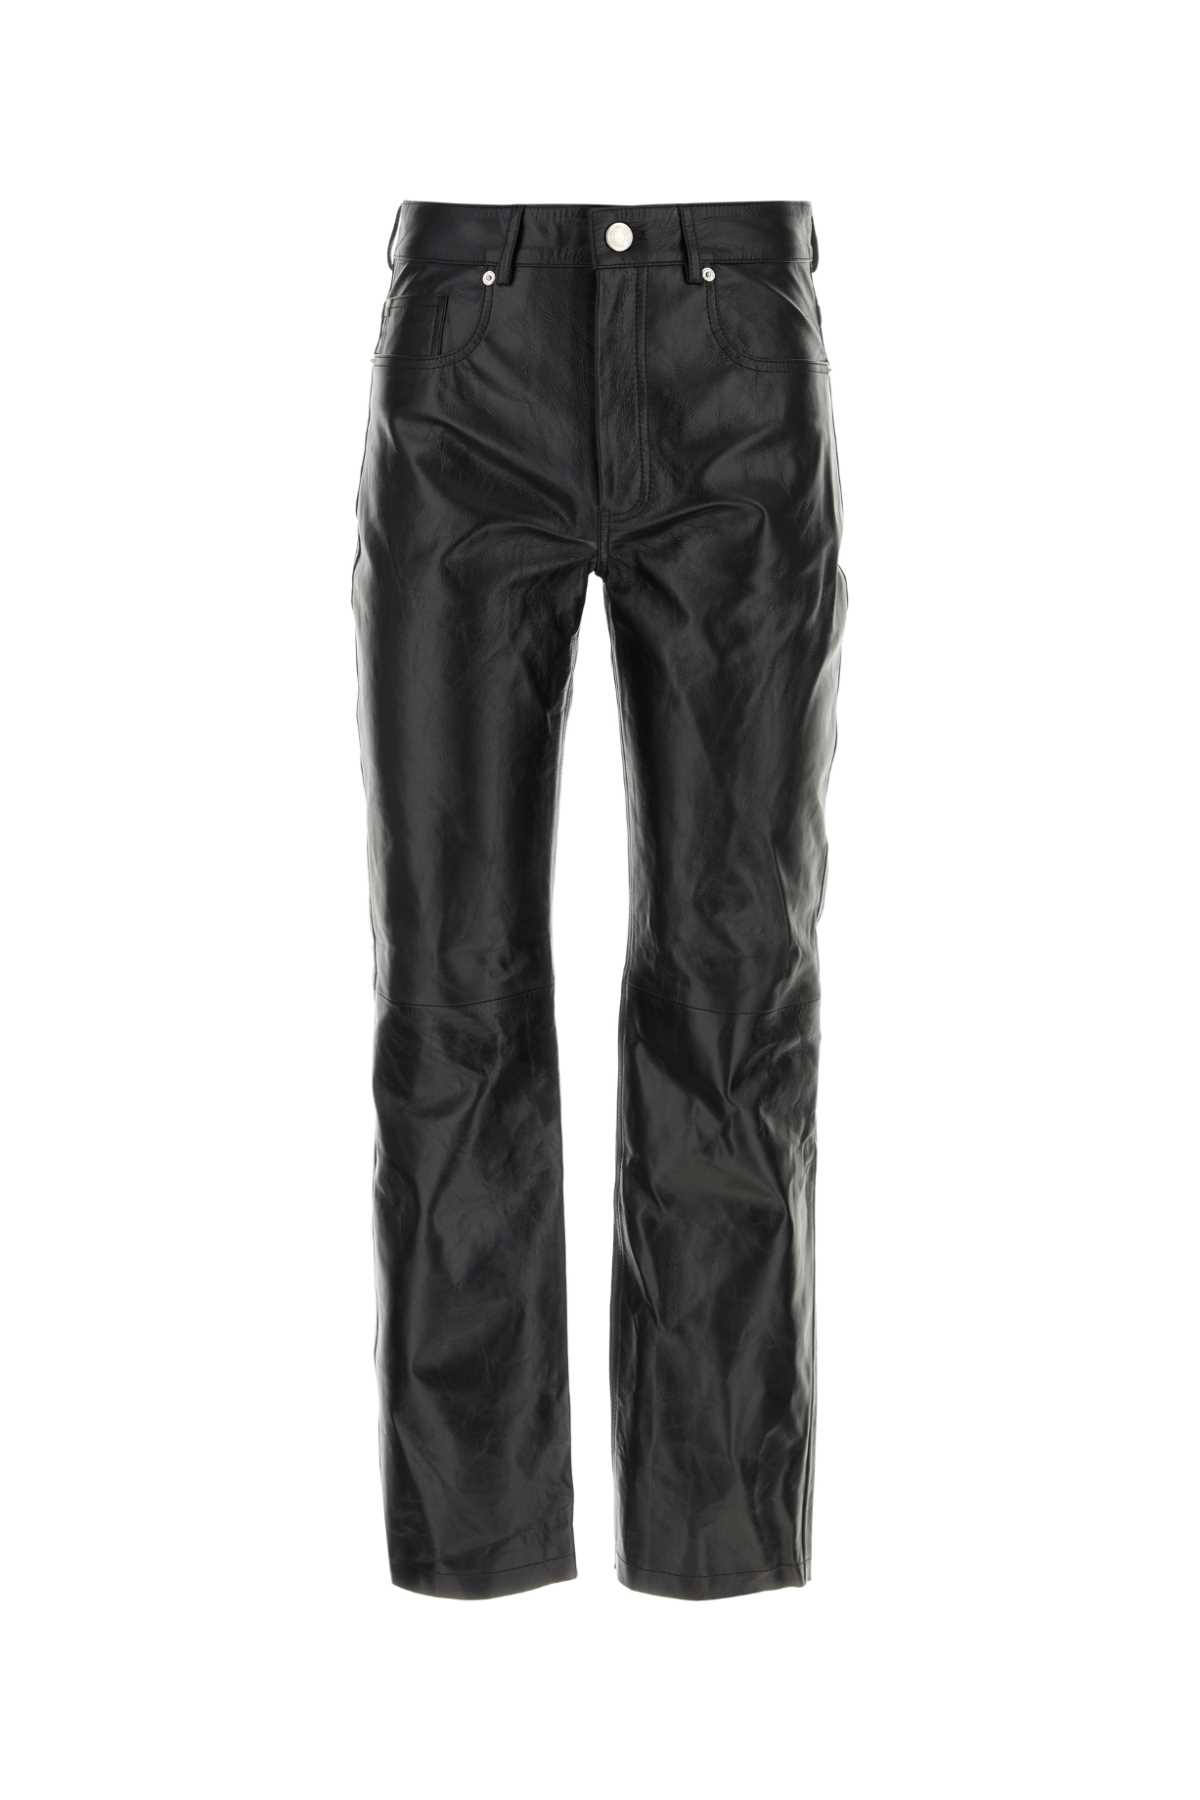 Shop Ami Alexandre Mattiussi Black Leather Pant